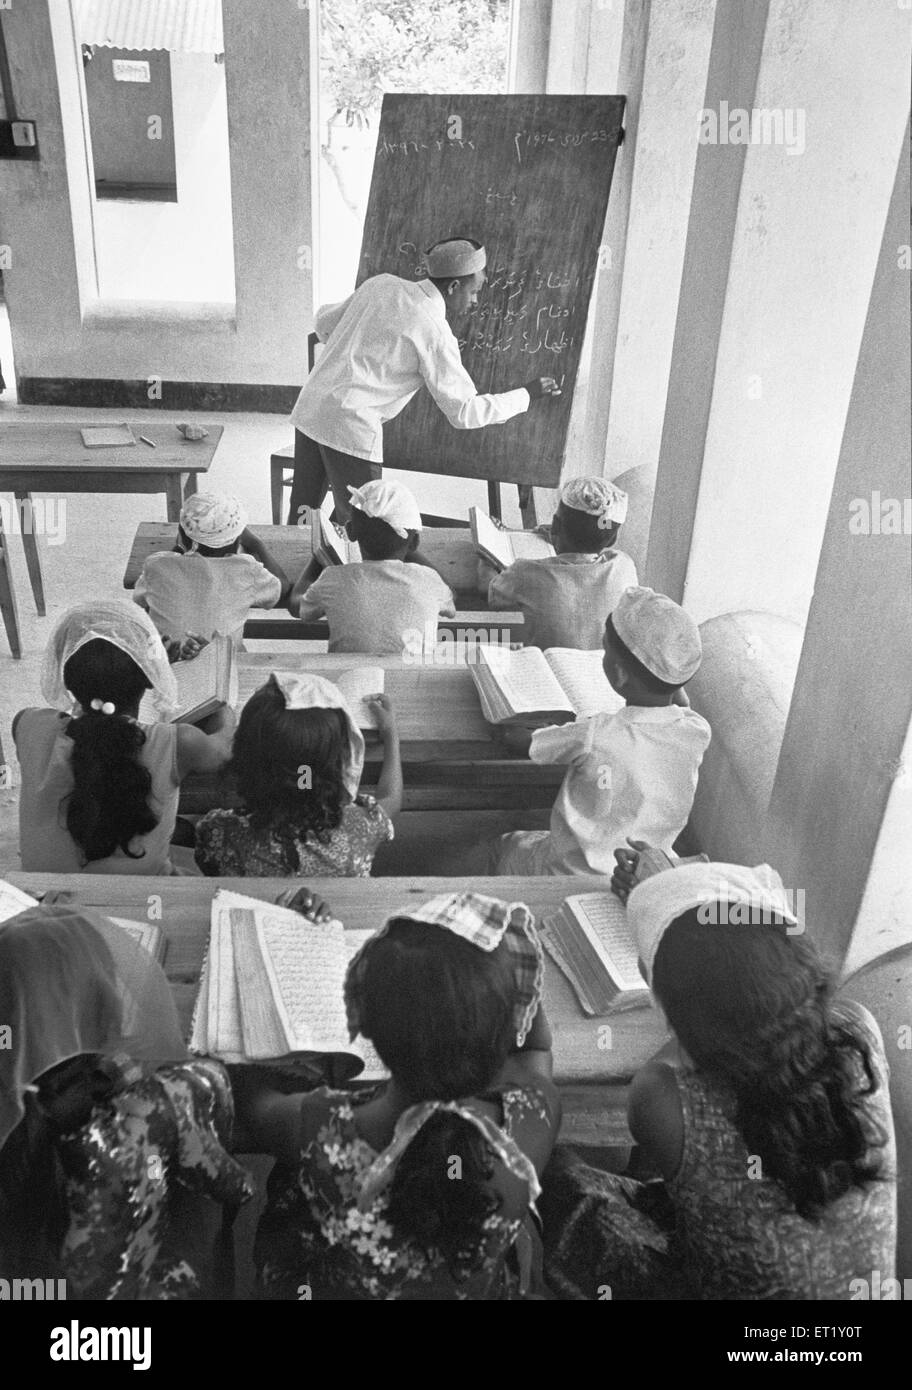 Klassenzimmer; männlich; Hauptstadt der Malediven; Asien; alter Jahrgang 1900er Jahre Stockfoto